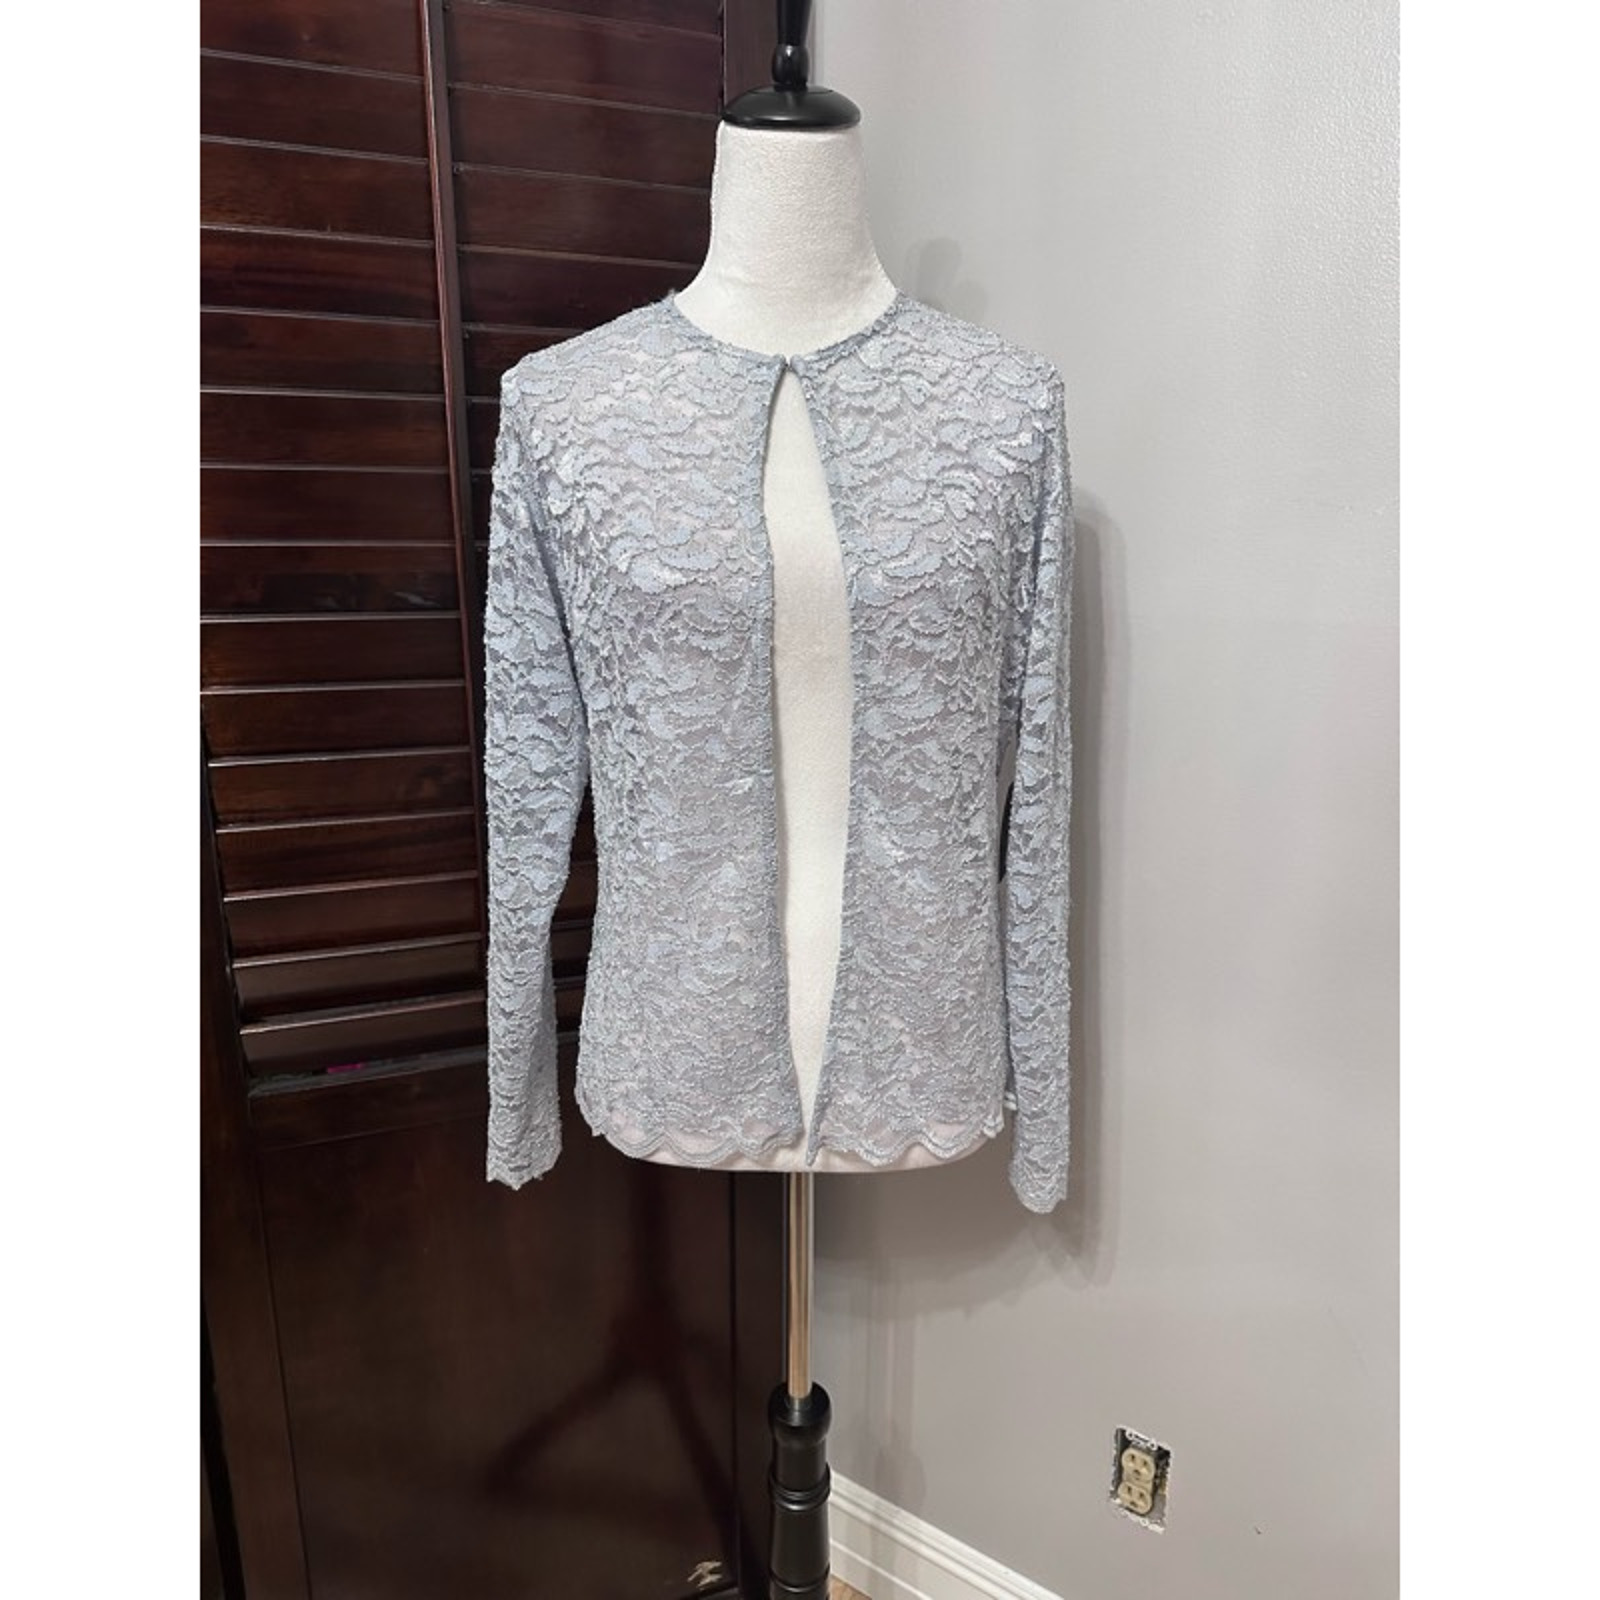 Marina Womens Evening Jacket Gray Floral Waist Length Buttons Collarless 4 New